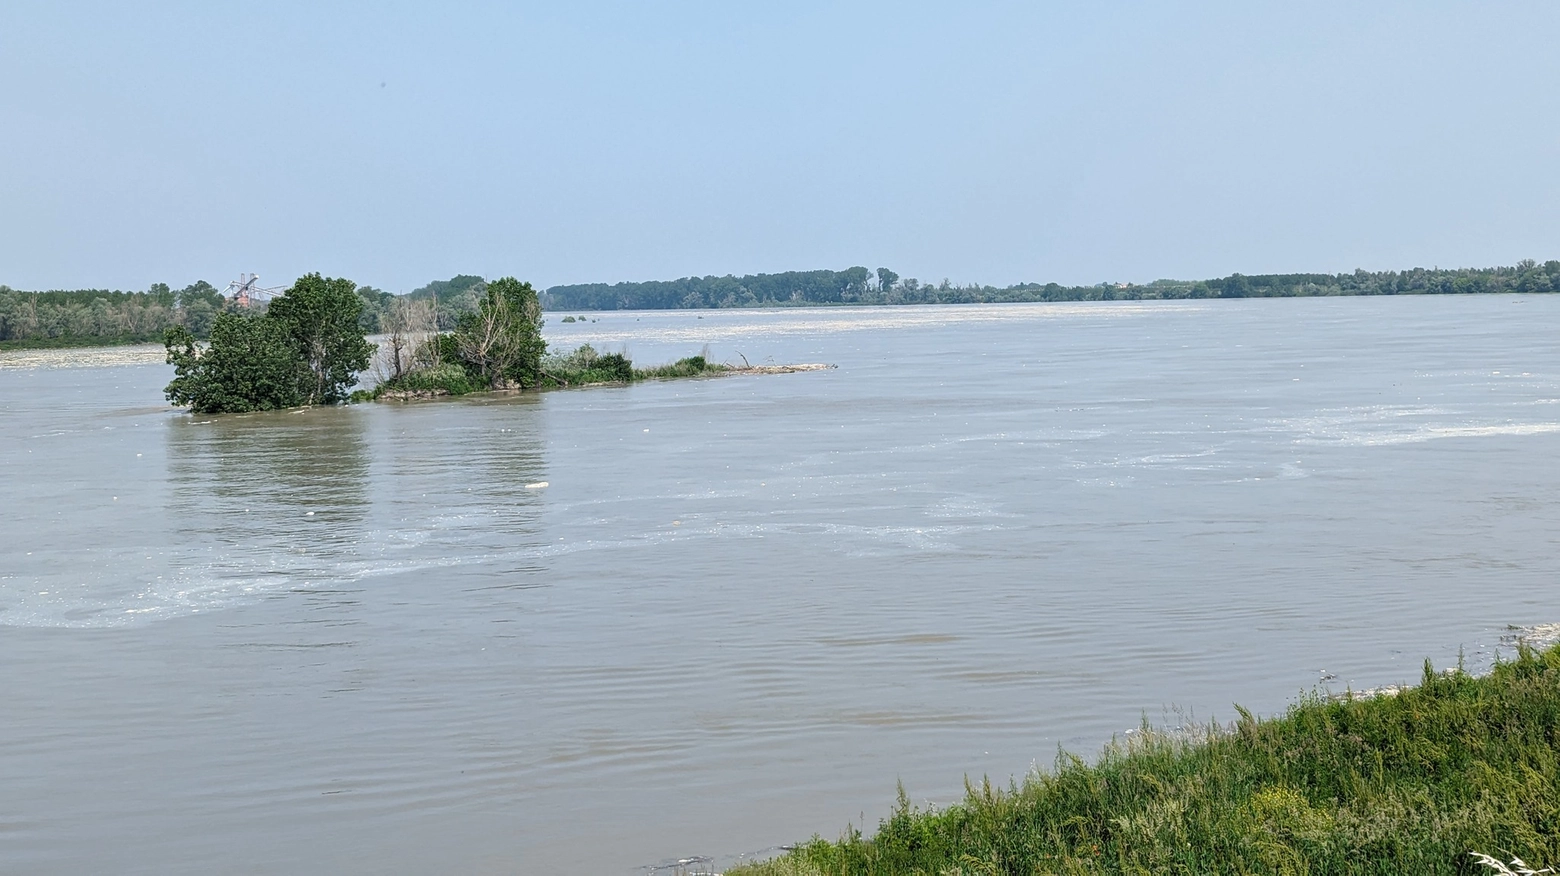 Il grande fiume ha raggiunto la quota di +0,67, in aumento rispetto al fine settimana. Allerta gialla sugli altri bacini regionali